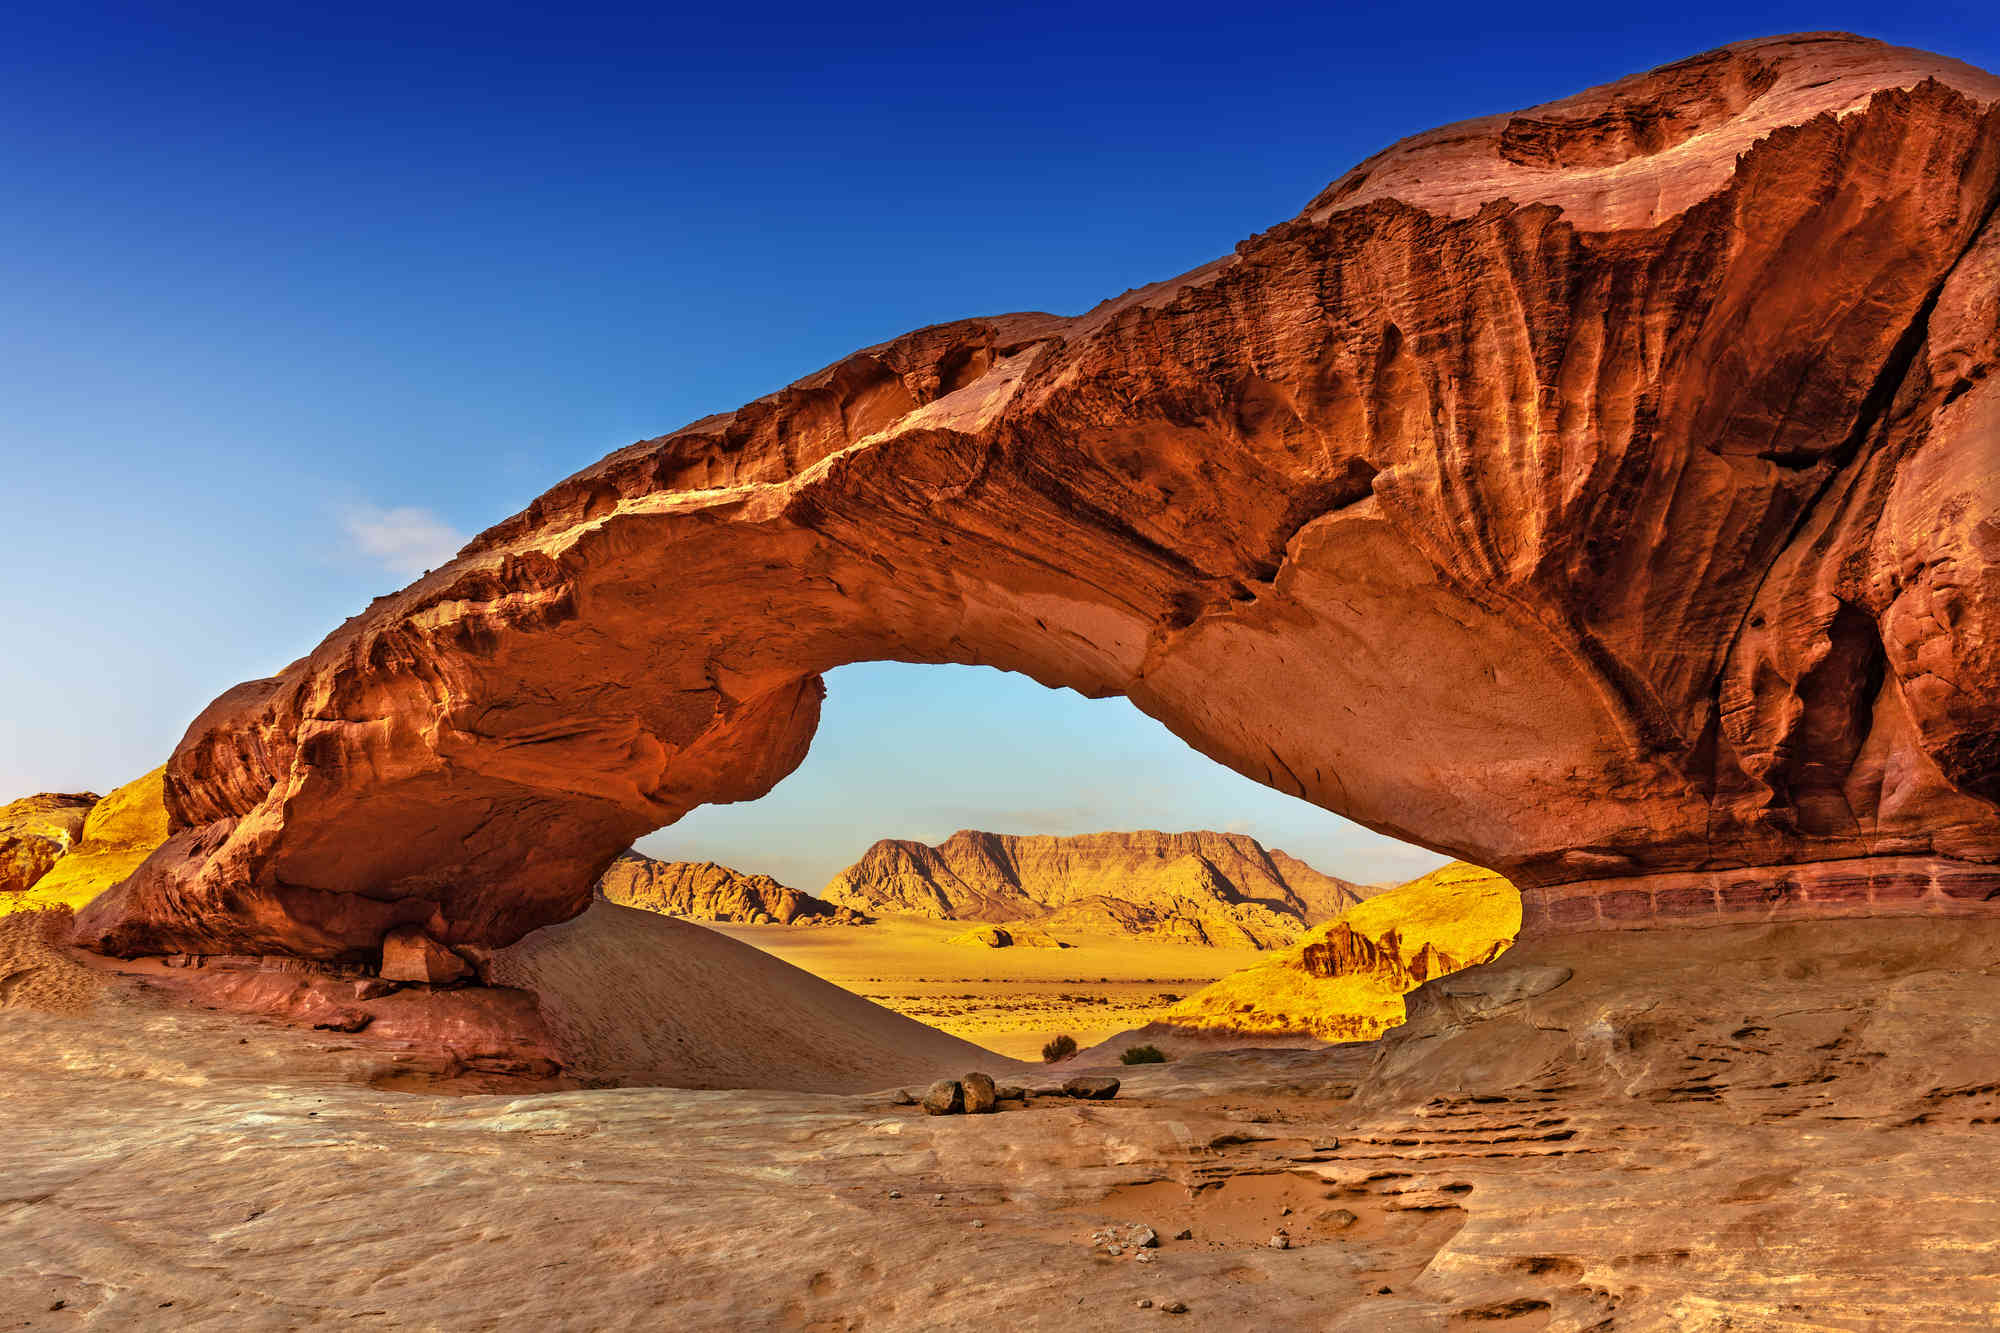 The wonders of Jordan: Petra, Wadi Rum, and the Dead Sea